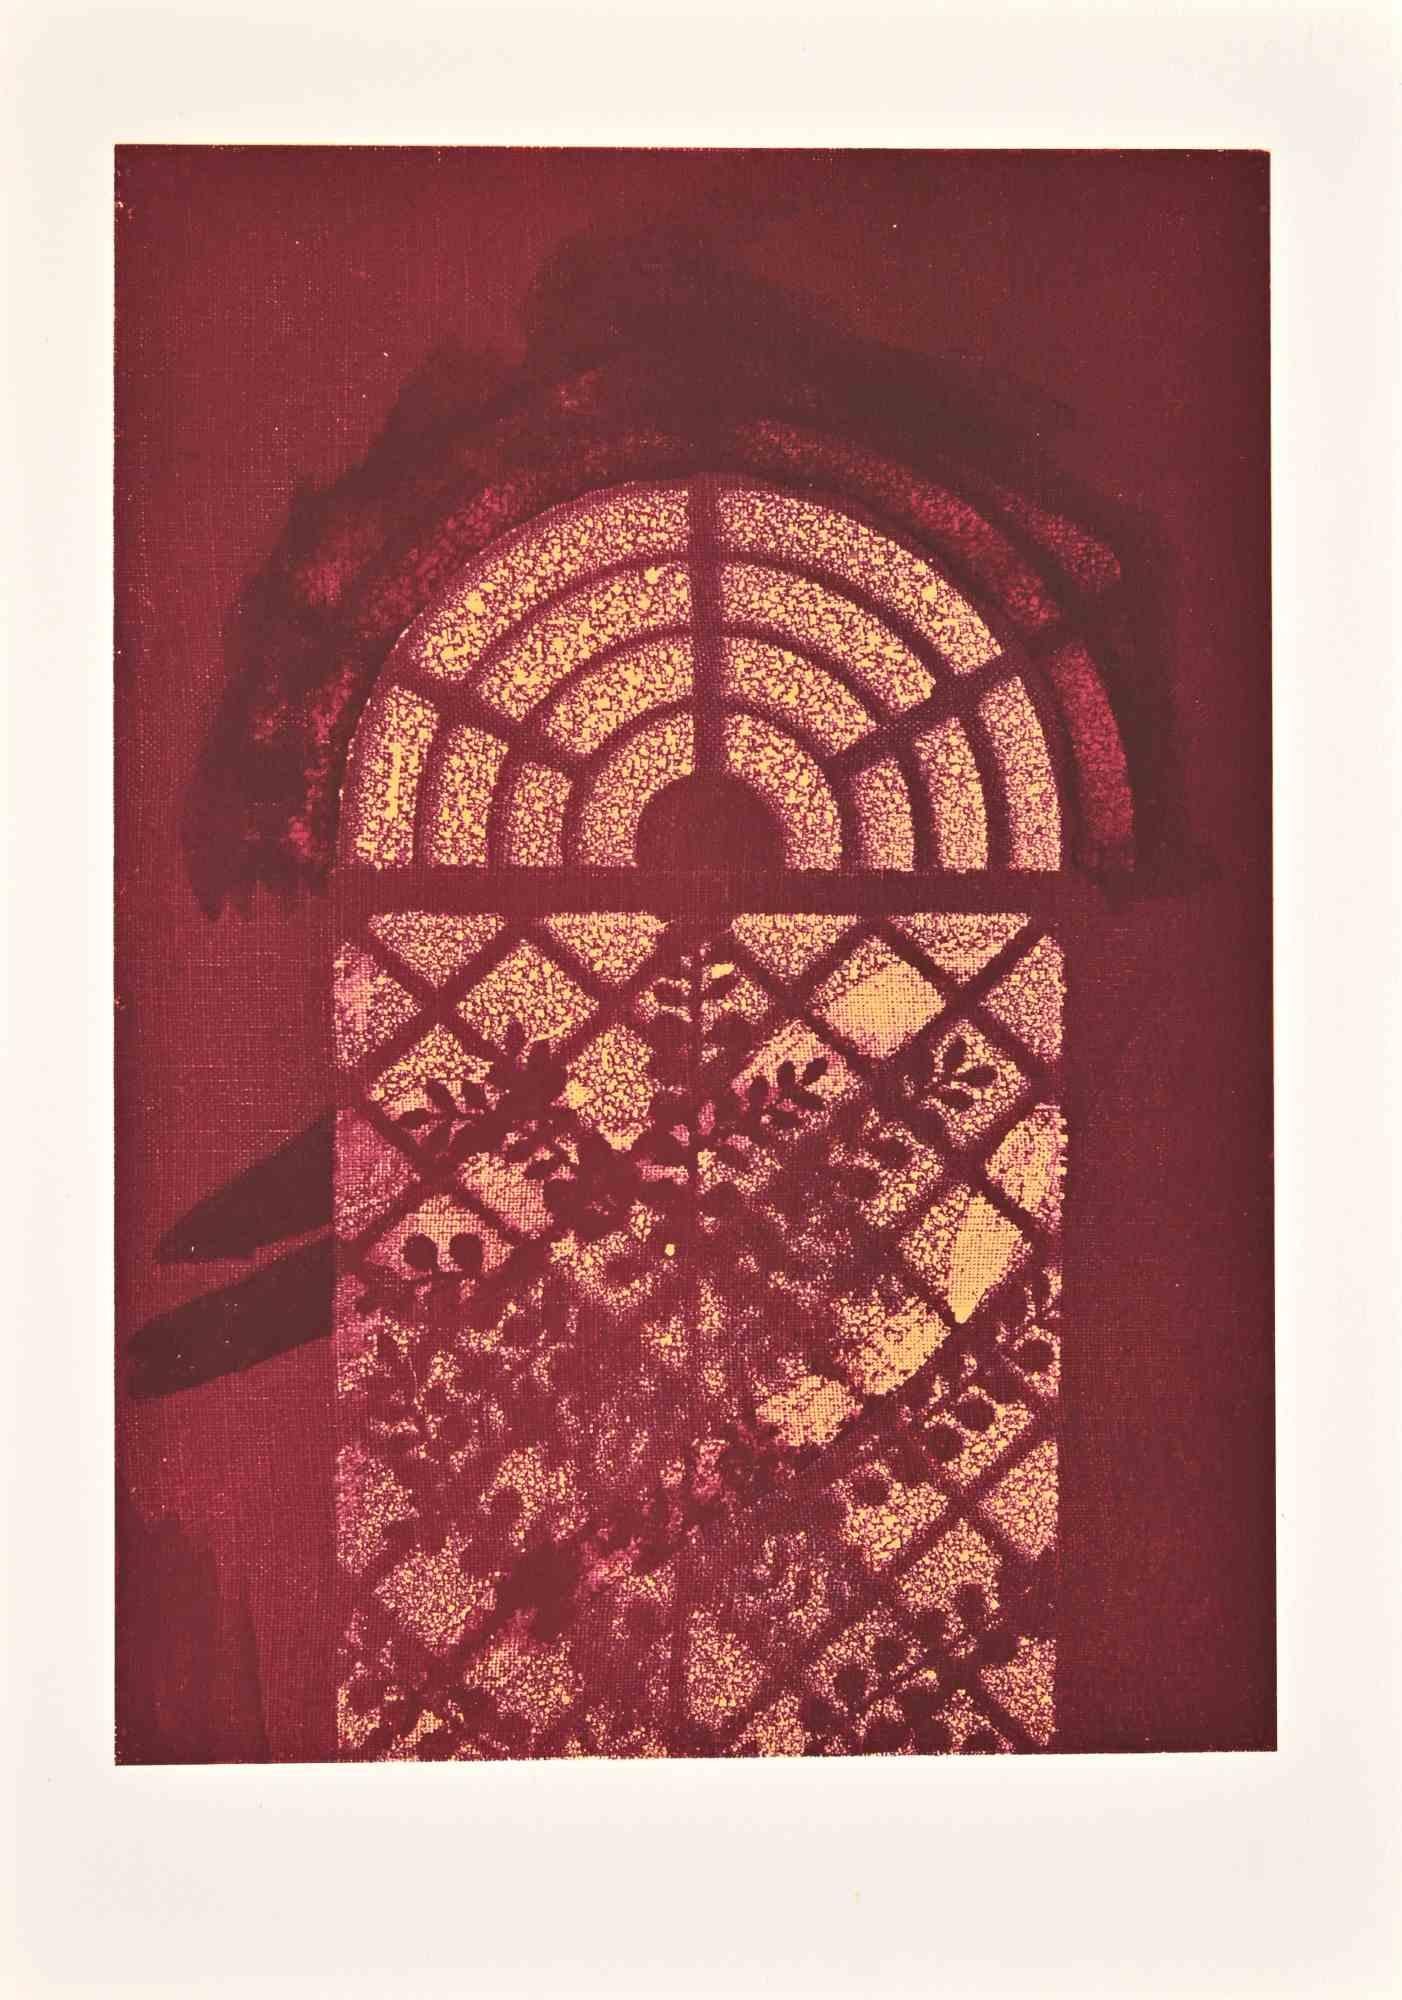 Through the Window est une lithographie sur papier Arches réalisée par Max Ernst en 1972.

Appartient à la suite "Judith". Edition limitée à 500 exemplaires.

Non signé et non numéroté, tel que publié.

Les conditions de Godd.

La Suite a été